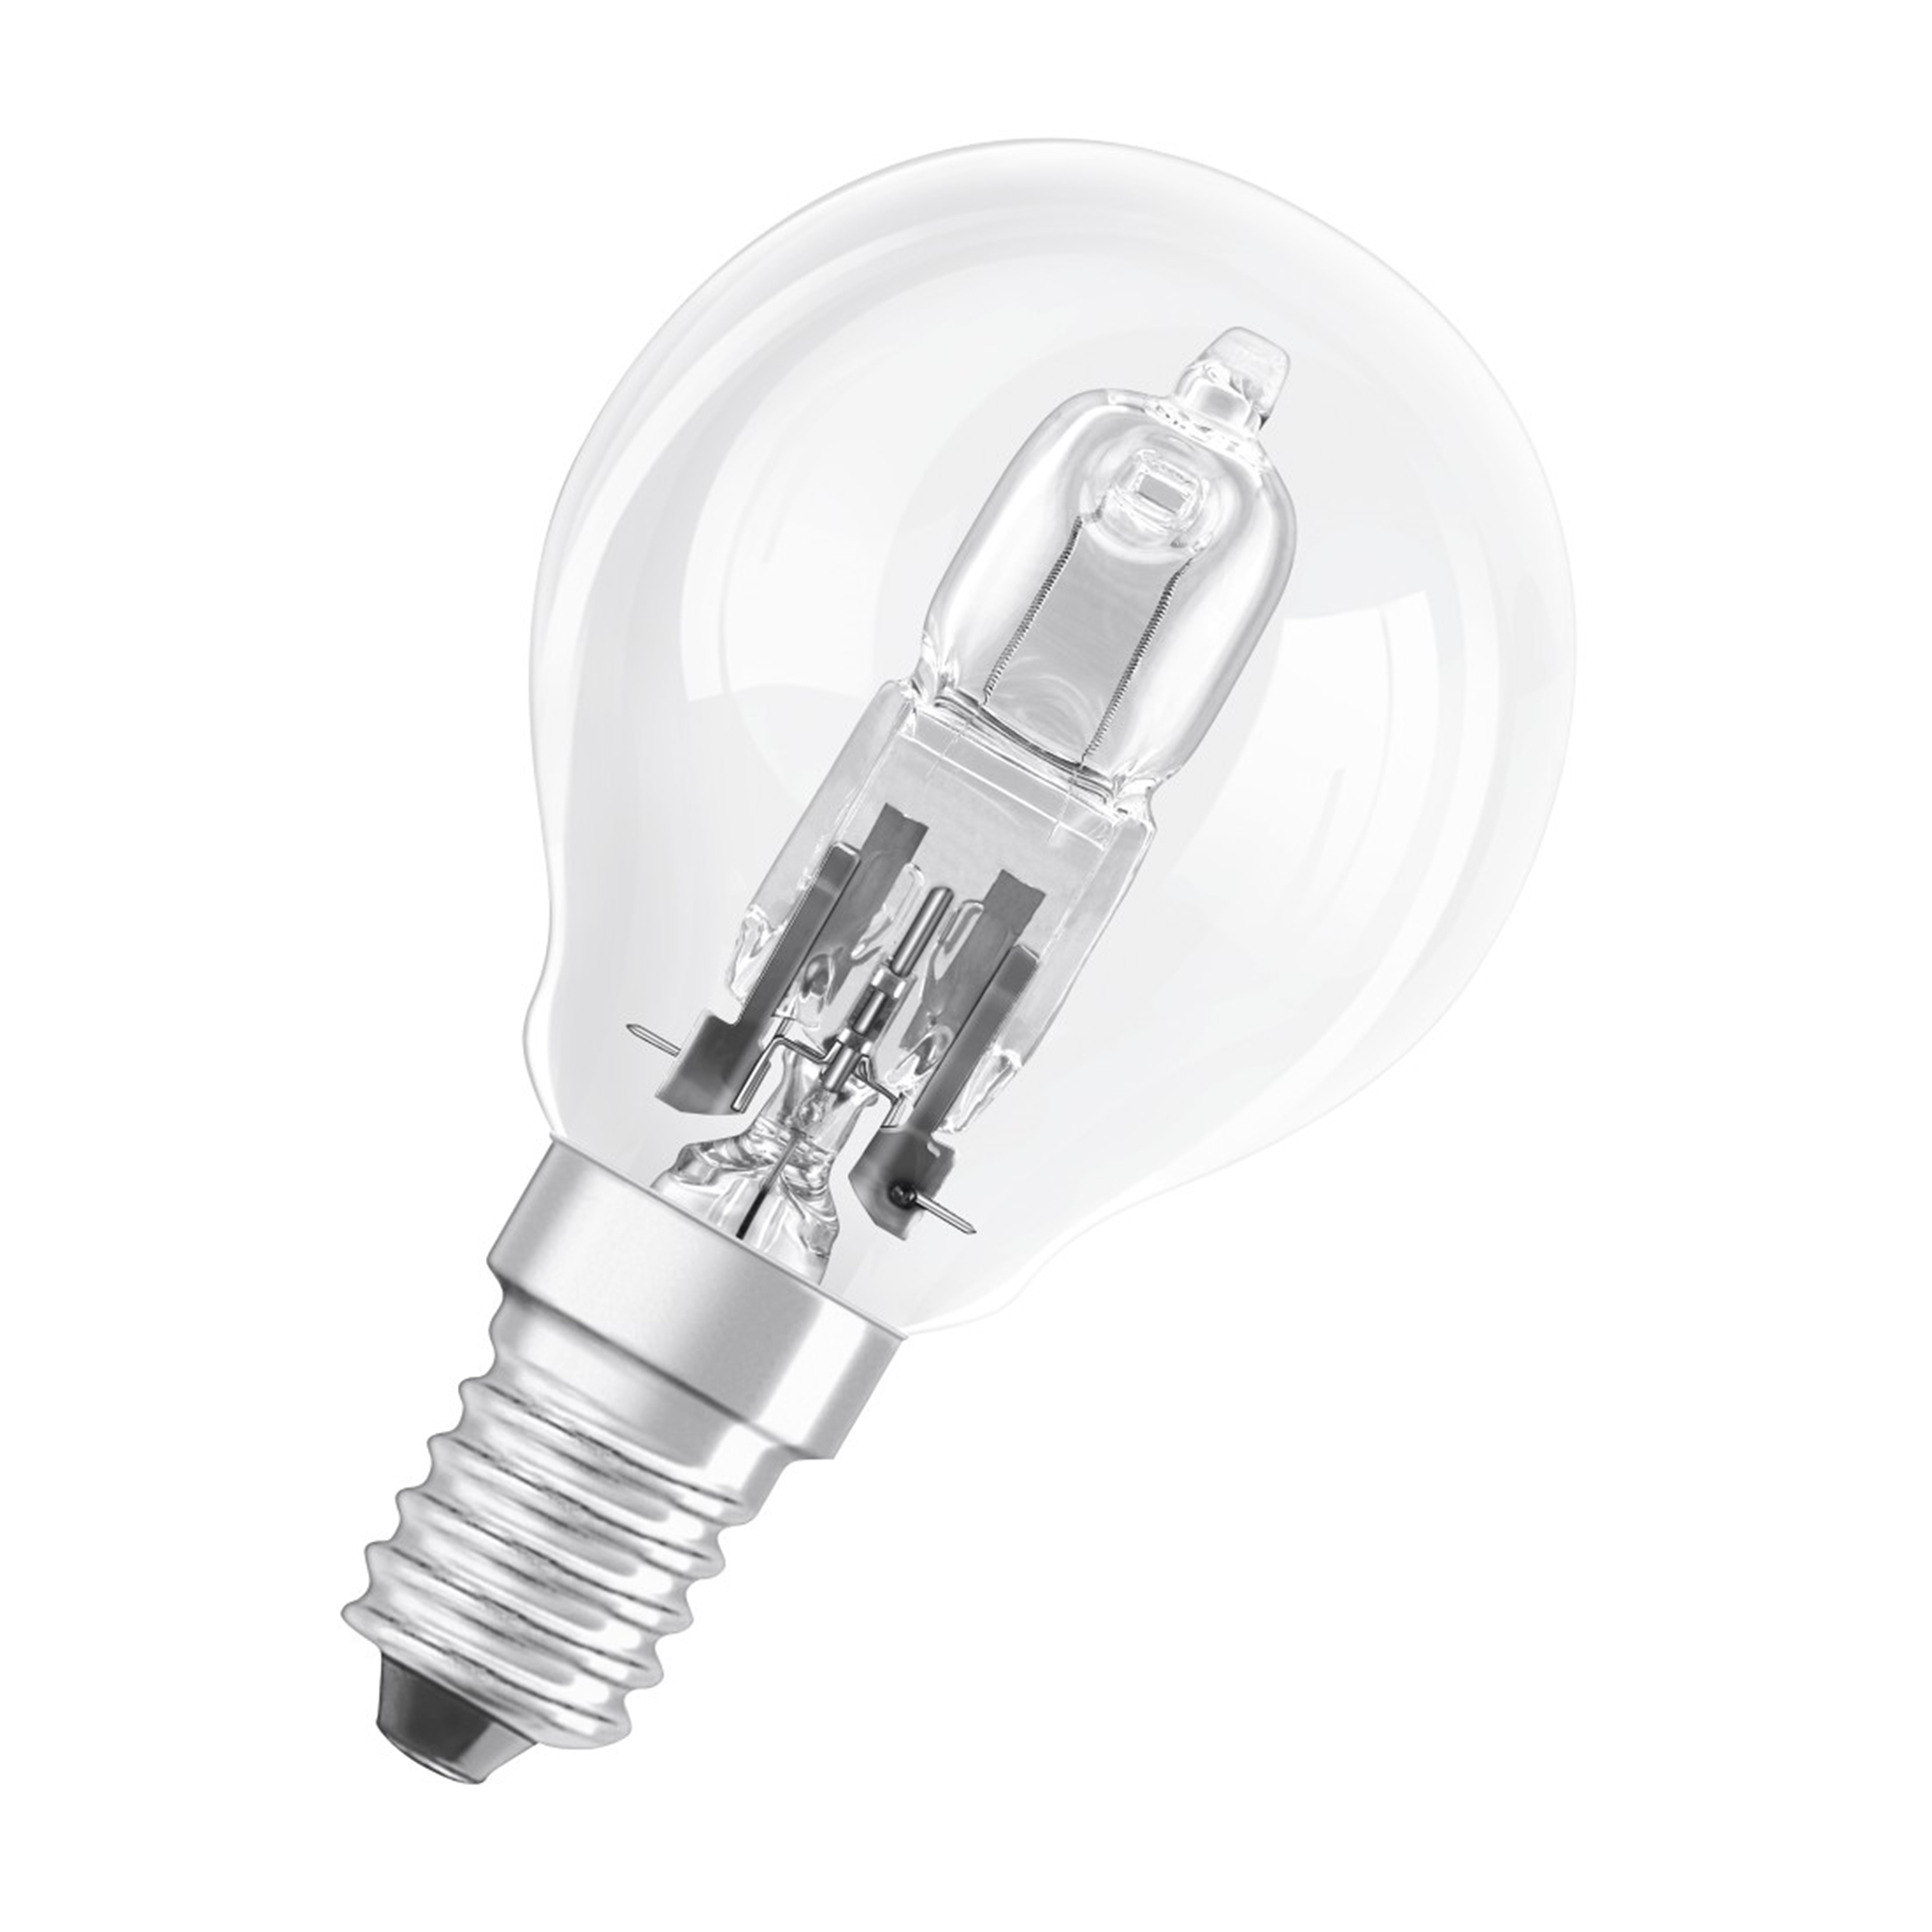 XAVAX E14, E14 20W Warmweiß LED-Lampe